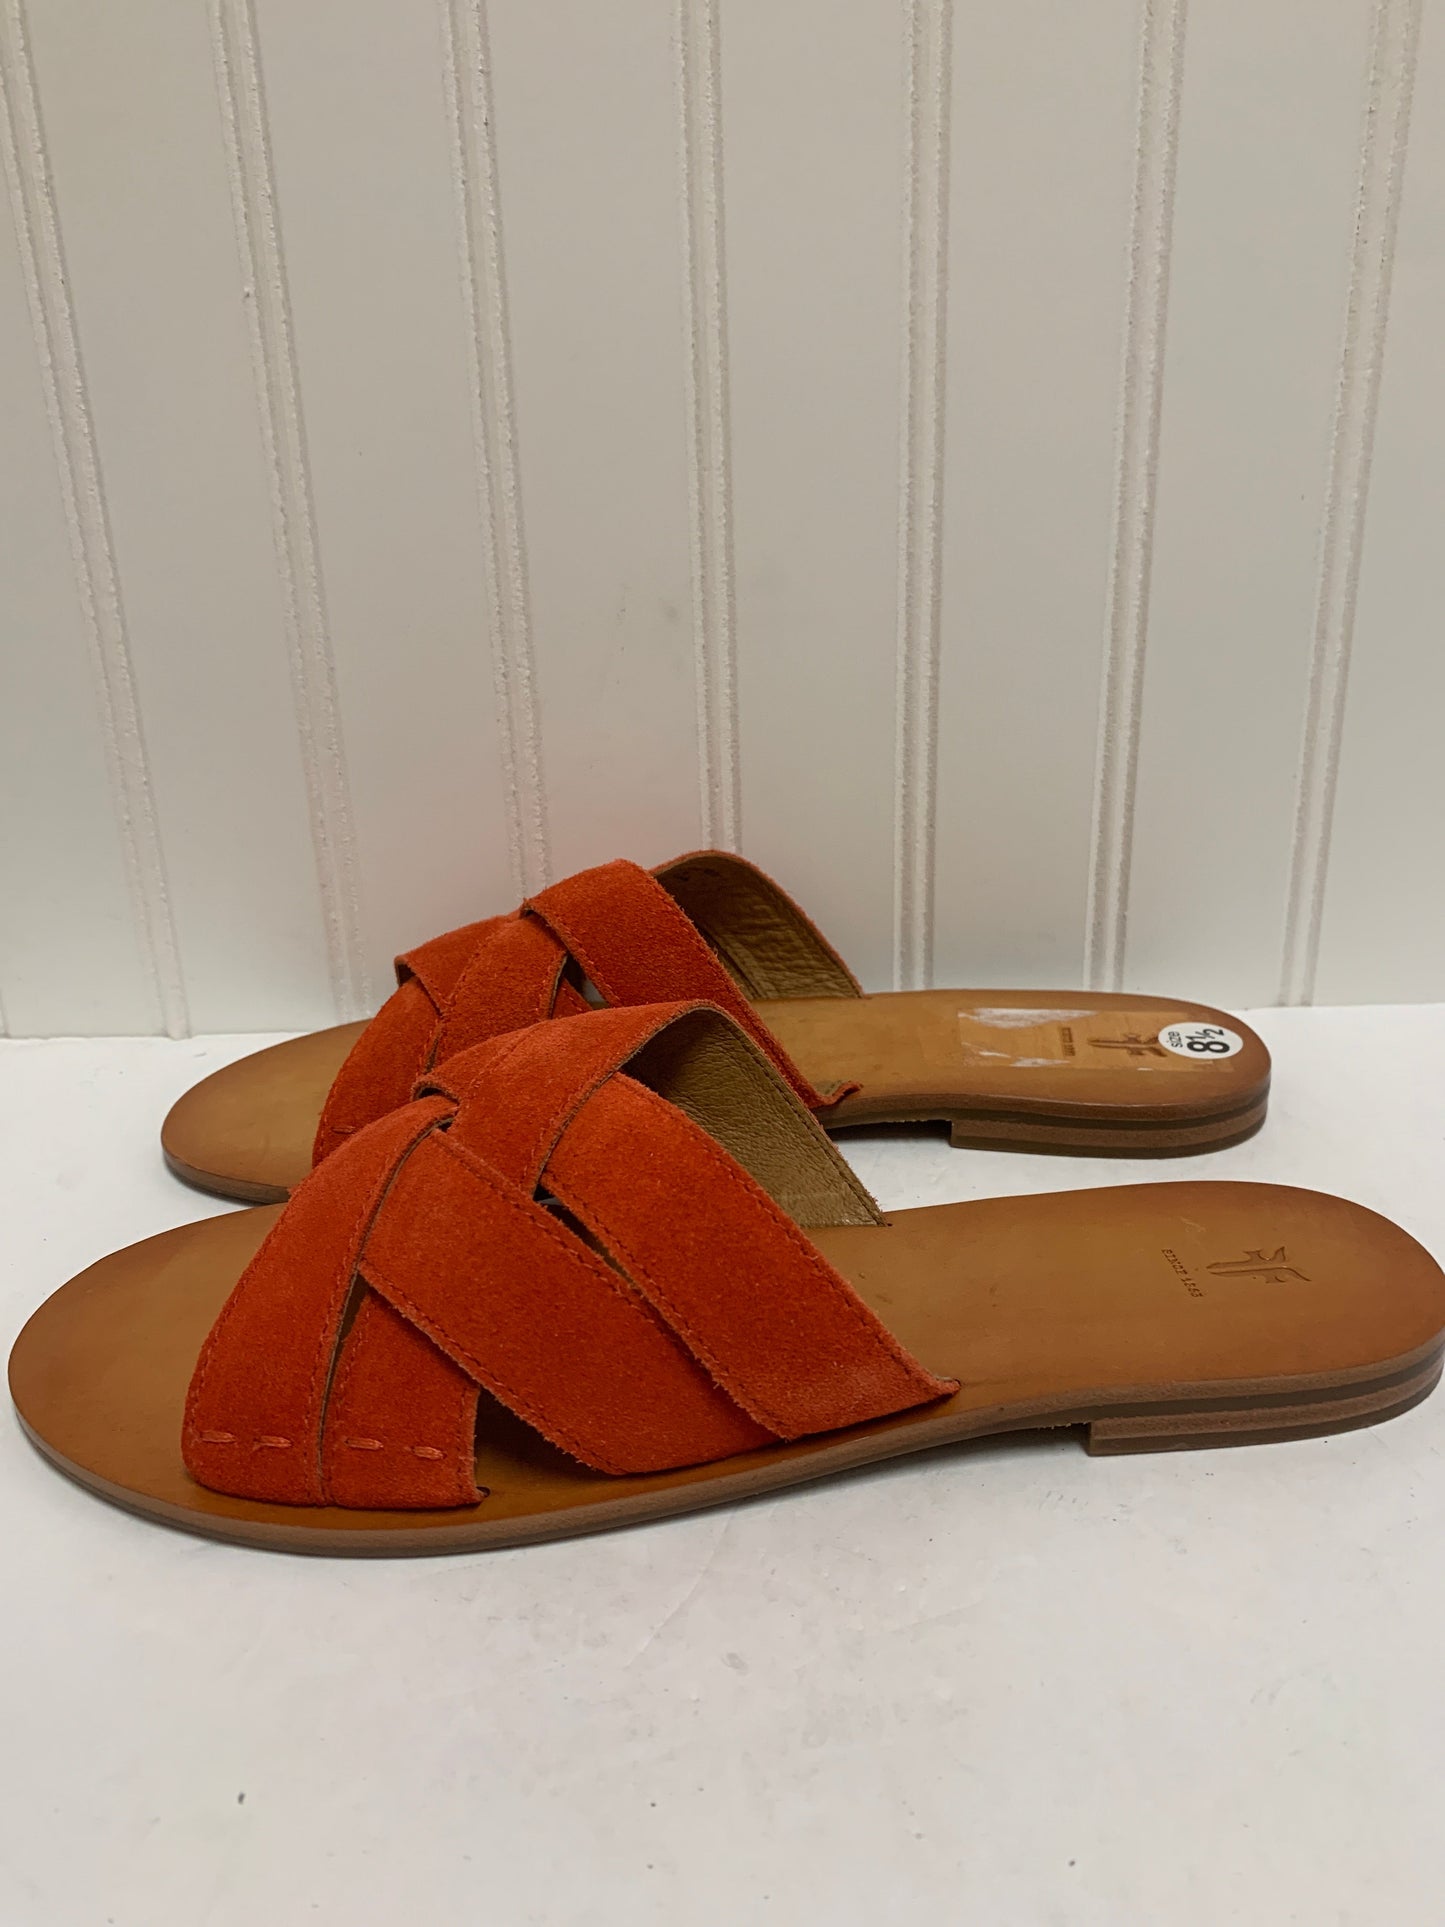 Sandals Designer By Frye  Size: 8.5